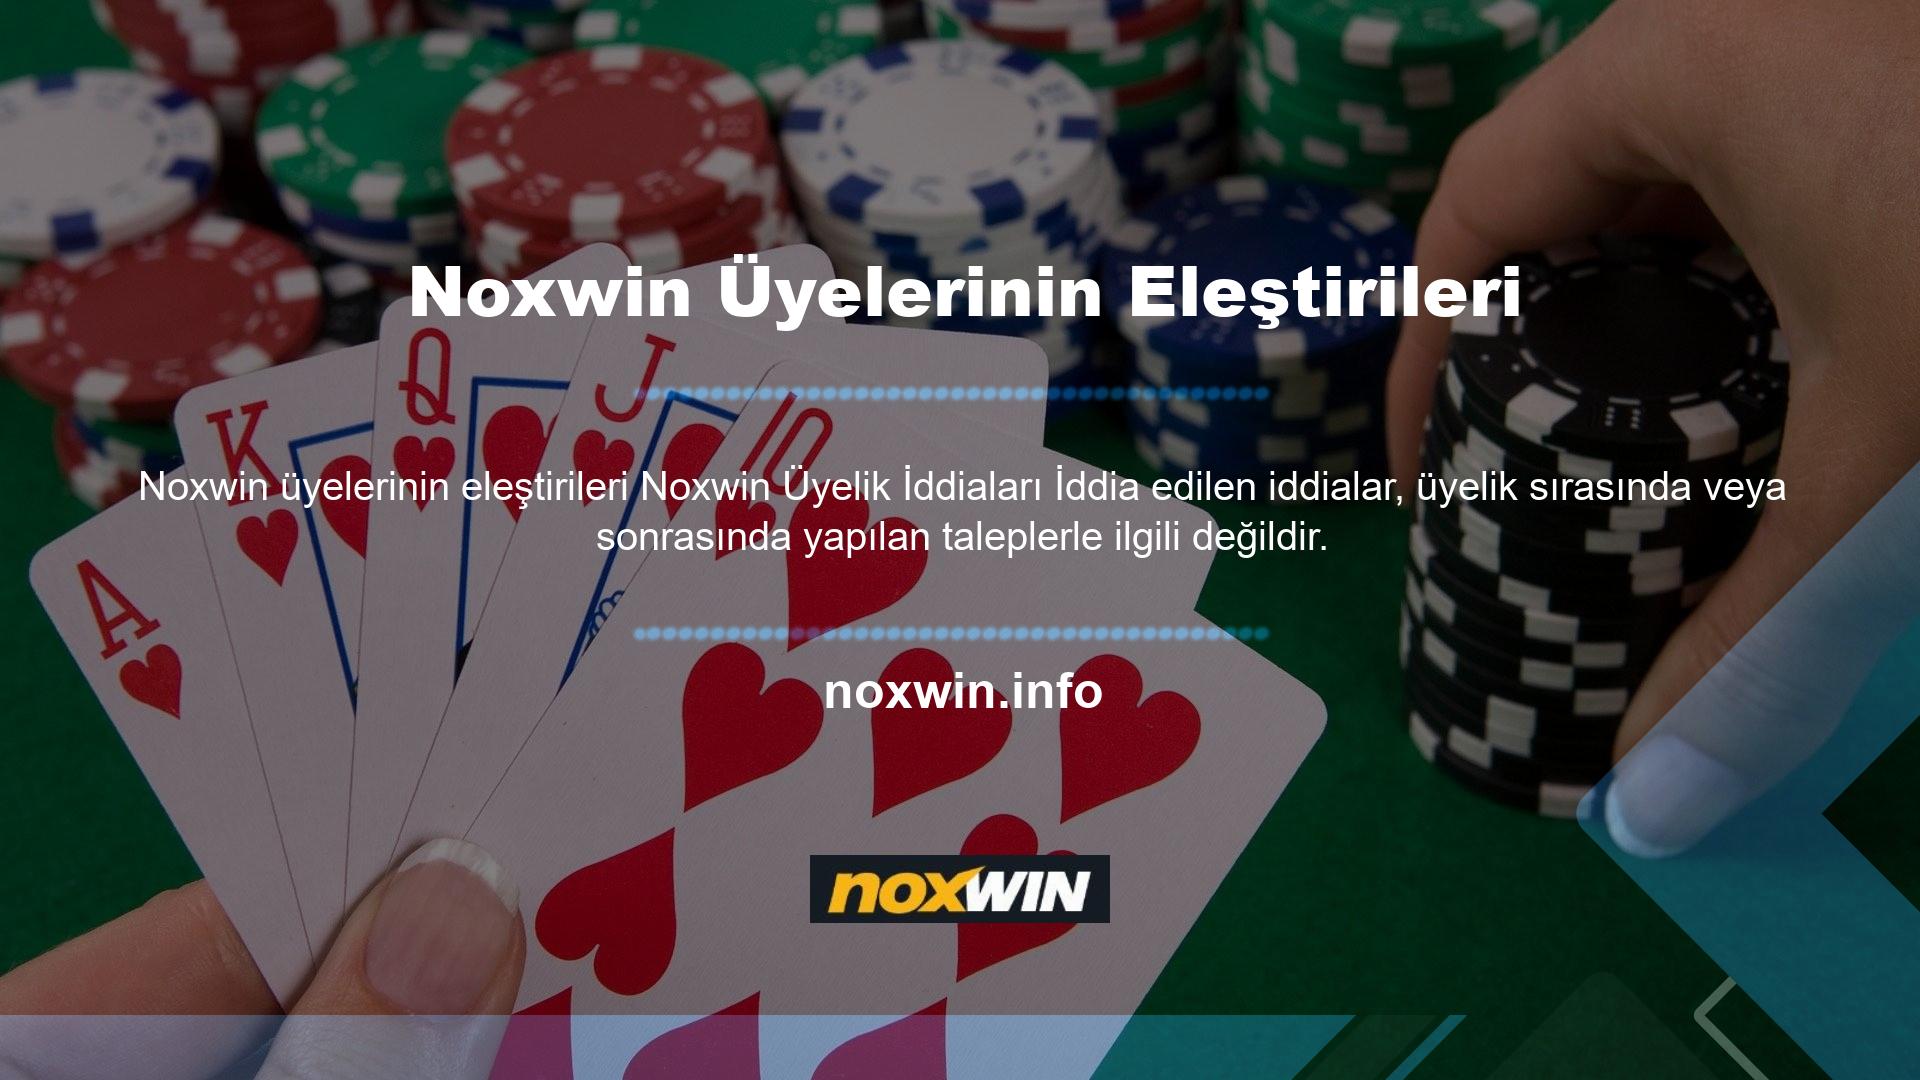 Noxwin ayrıca şikayetlerin önlenmesi amacıyla üyelik sırasında tüm üye bilgileri seçeneklerini sunmaktadır